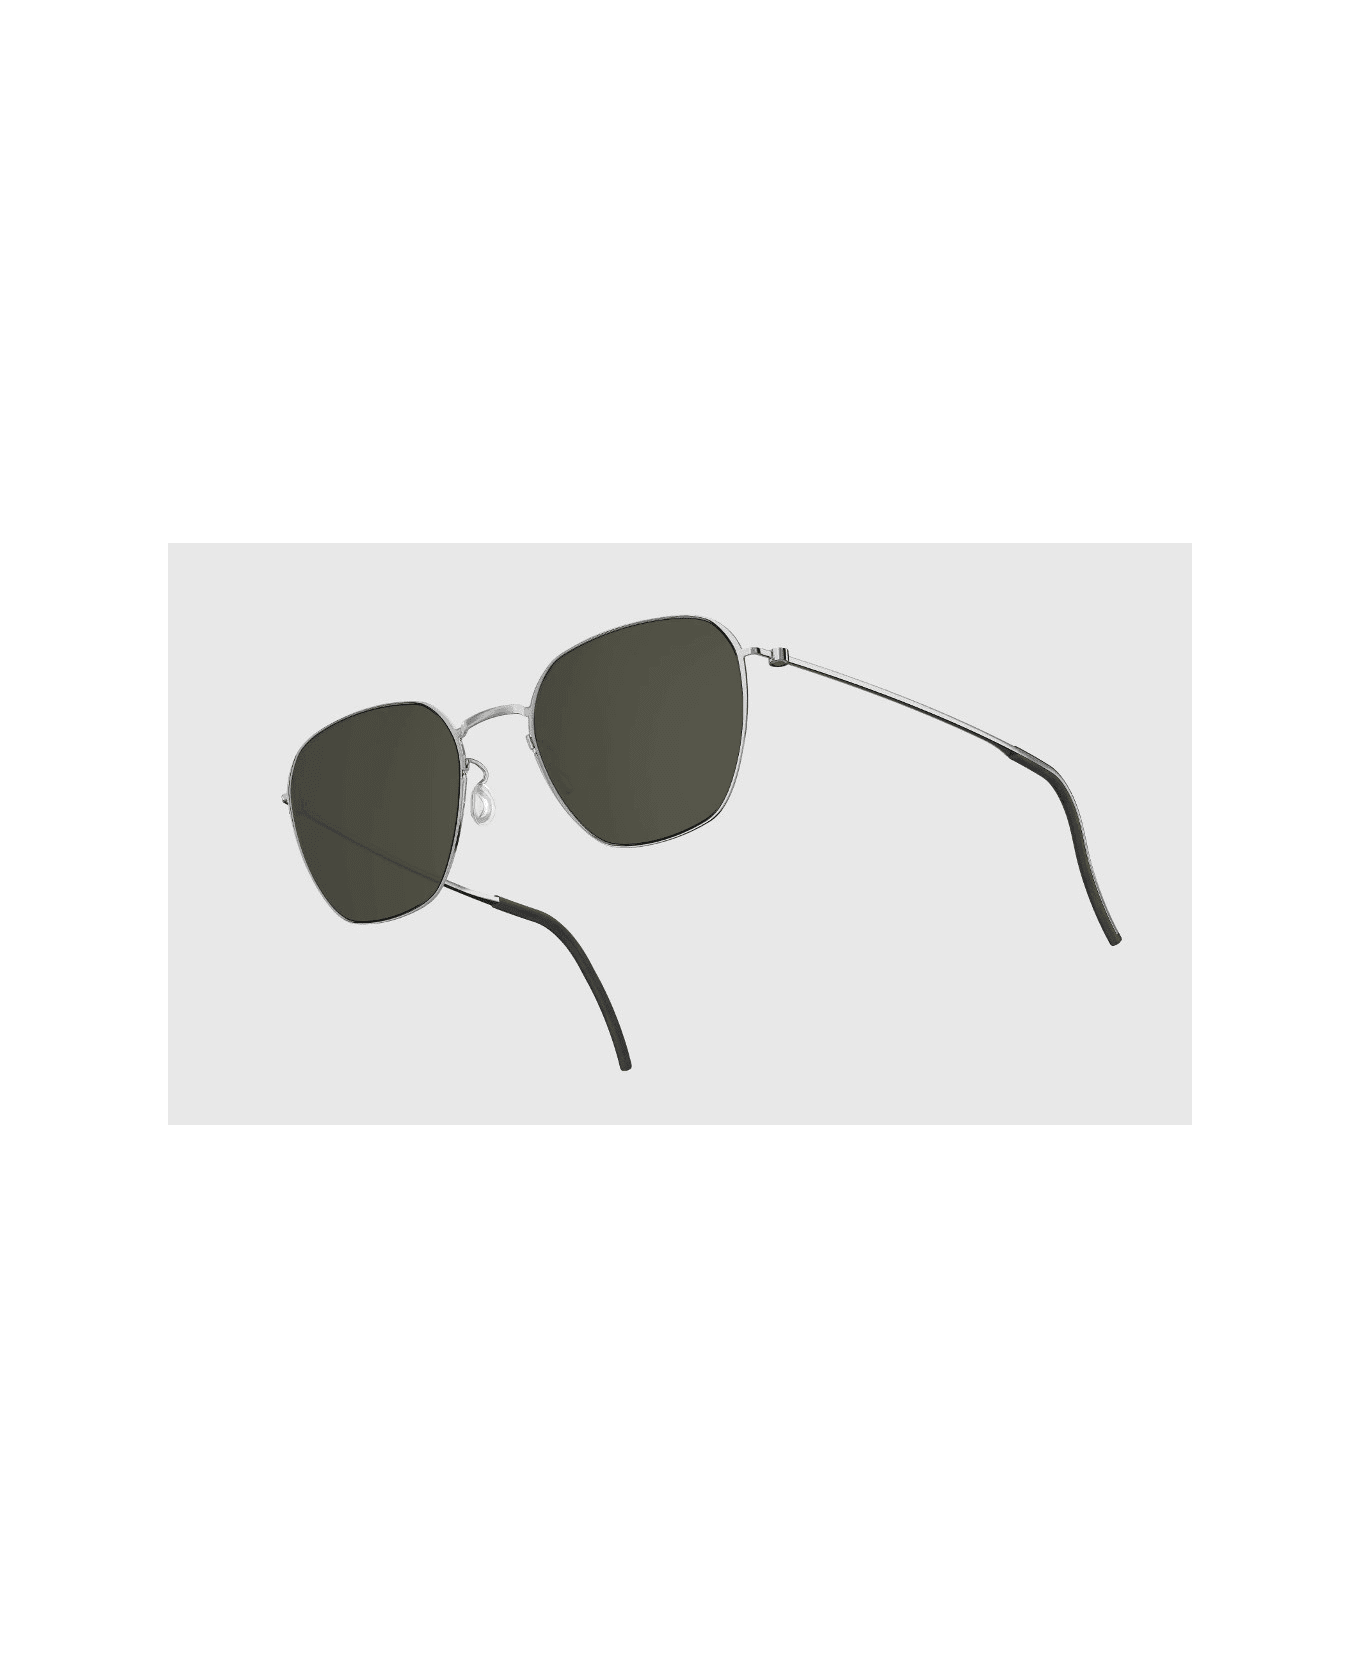 LINDBERG SR8810 P10 Sunglasses - Grigio lenti grigie